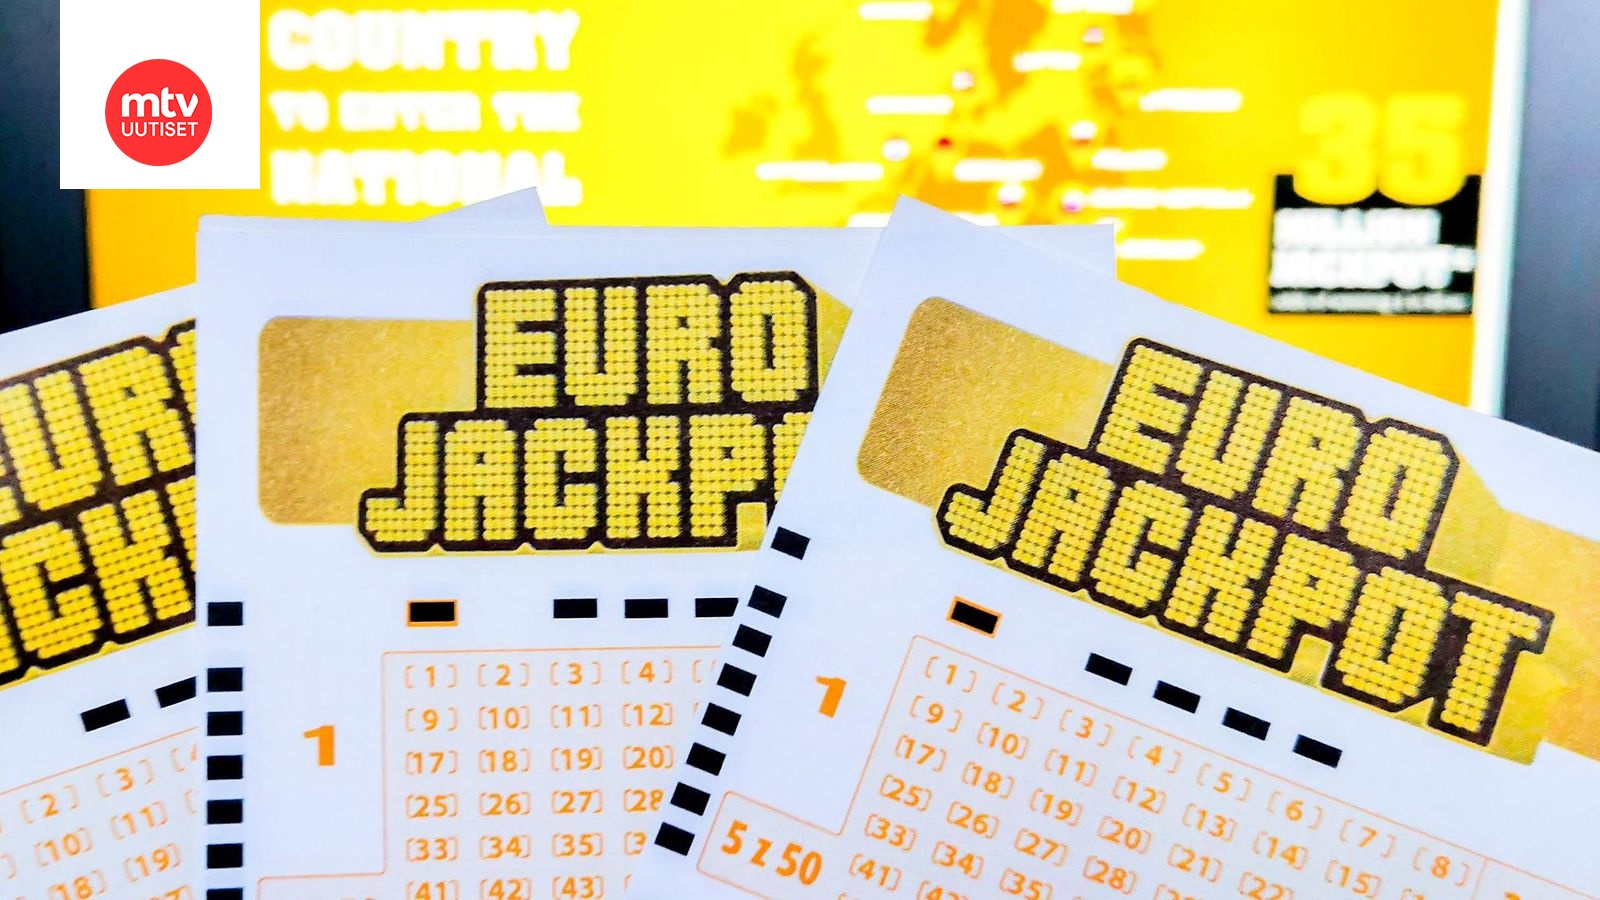 Tänne 40 miljoonan euron Eurojackpot meni 